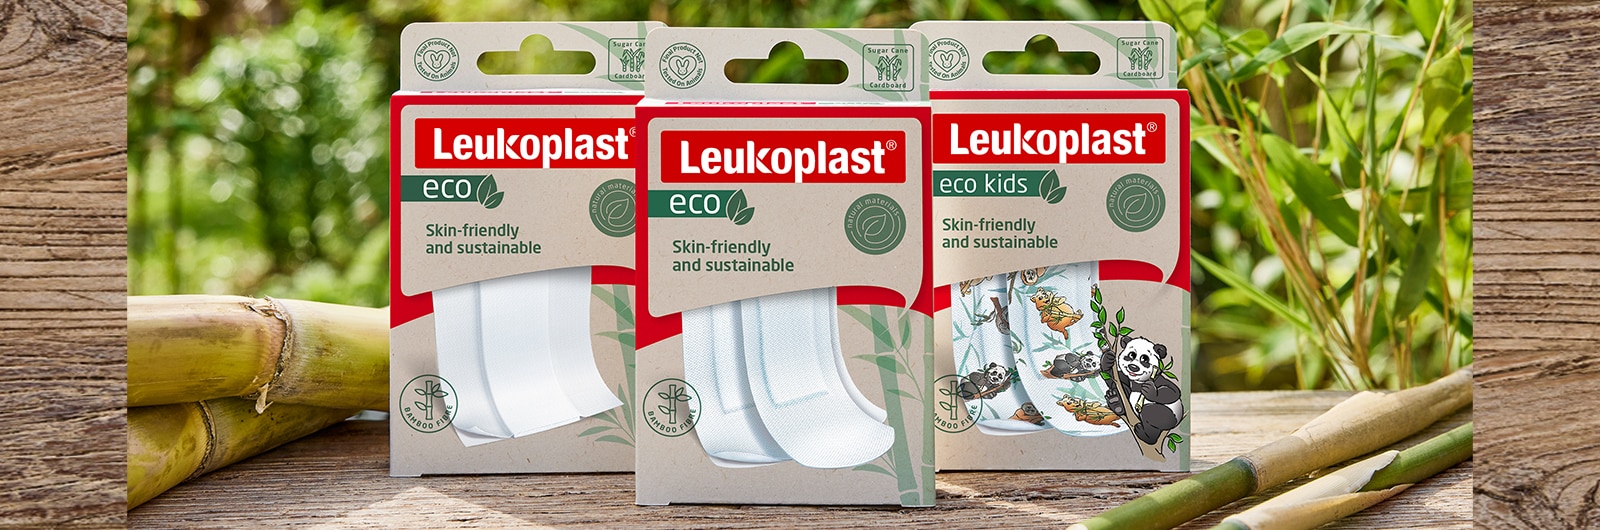 Bild zeigt Leukoplast eco Packung der Zuschnitte, Streifen und Kids Variante